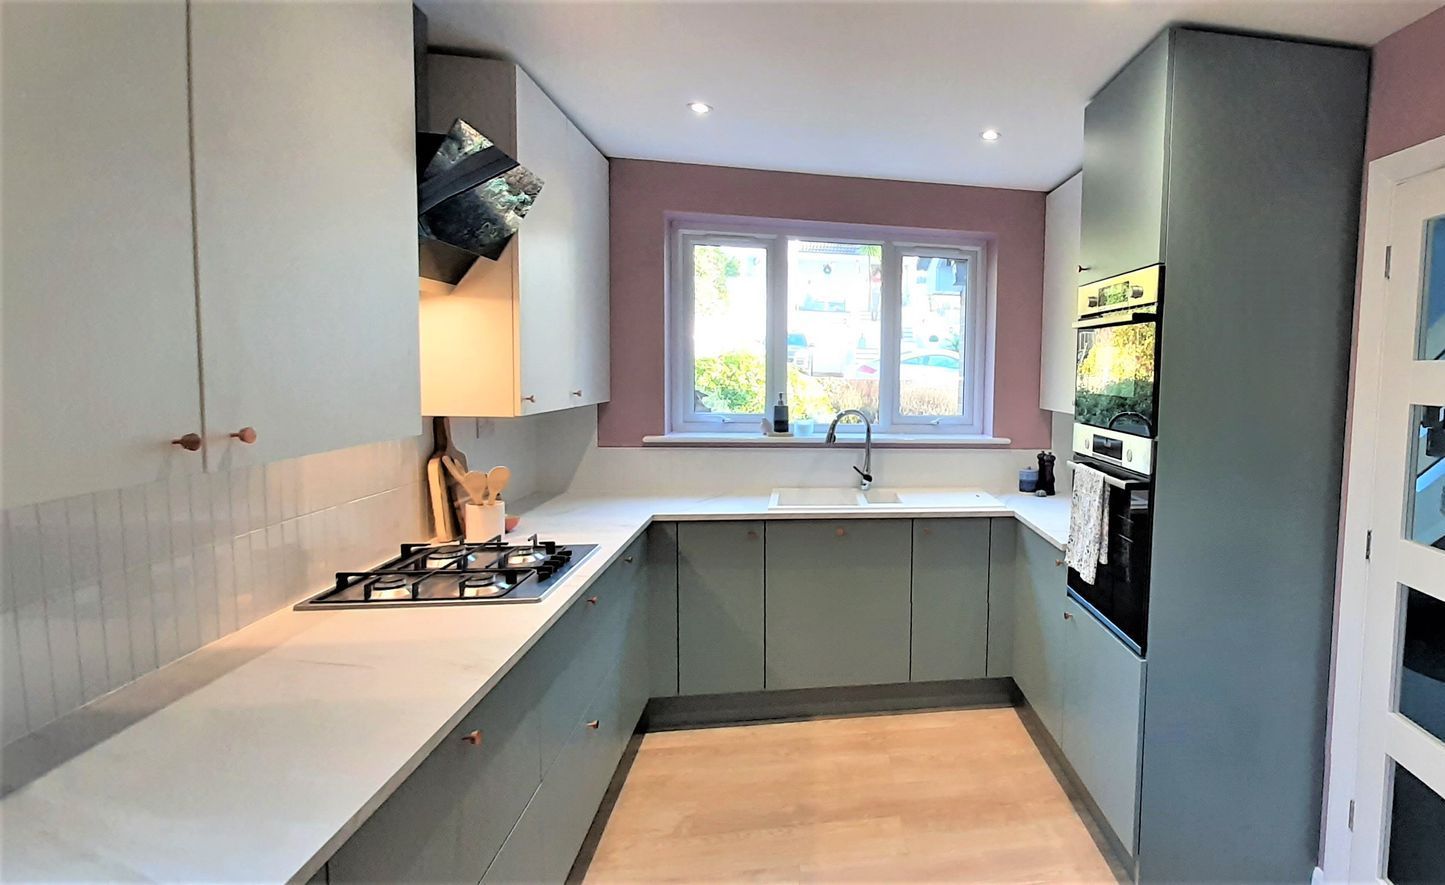 Home design, green kitchen,